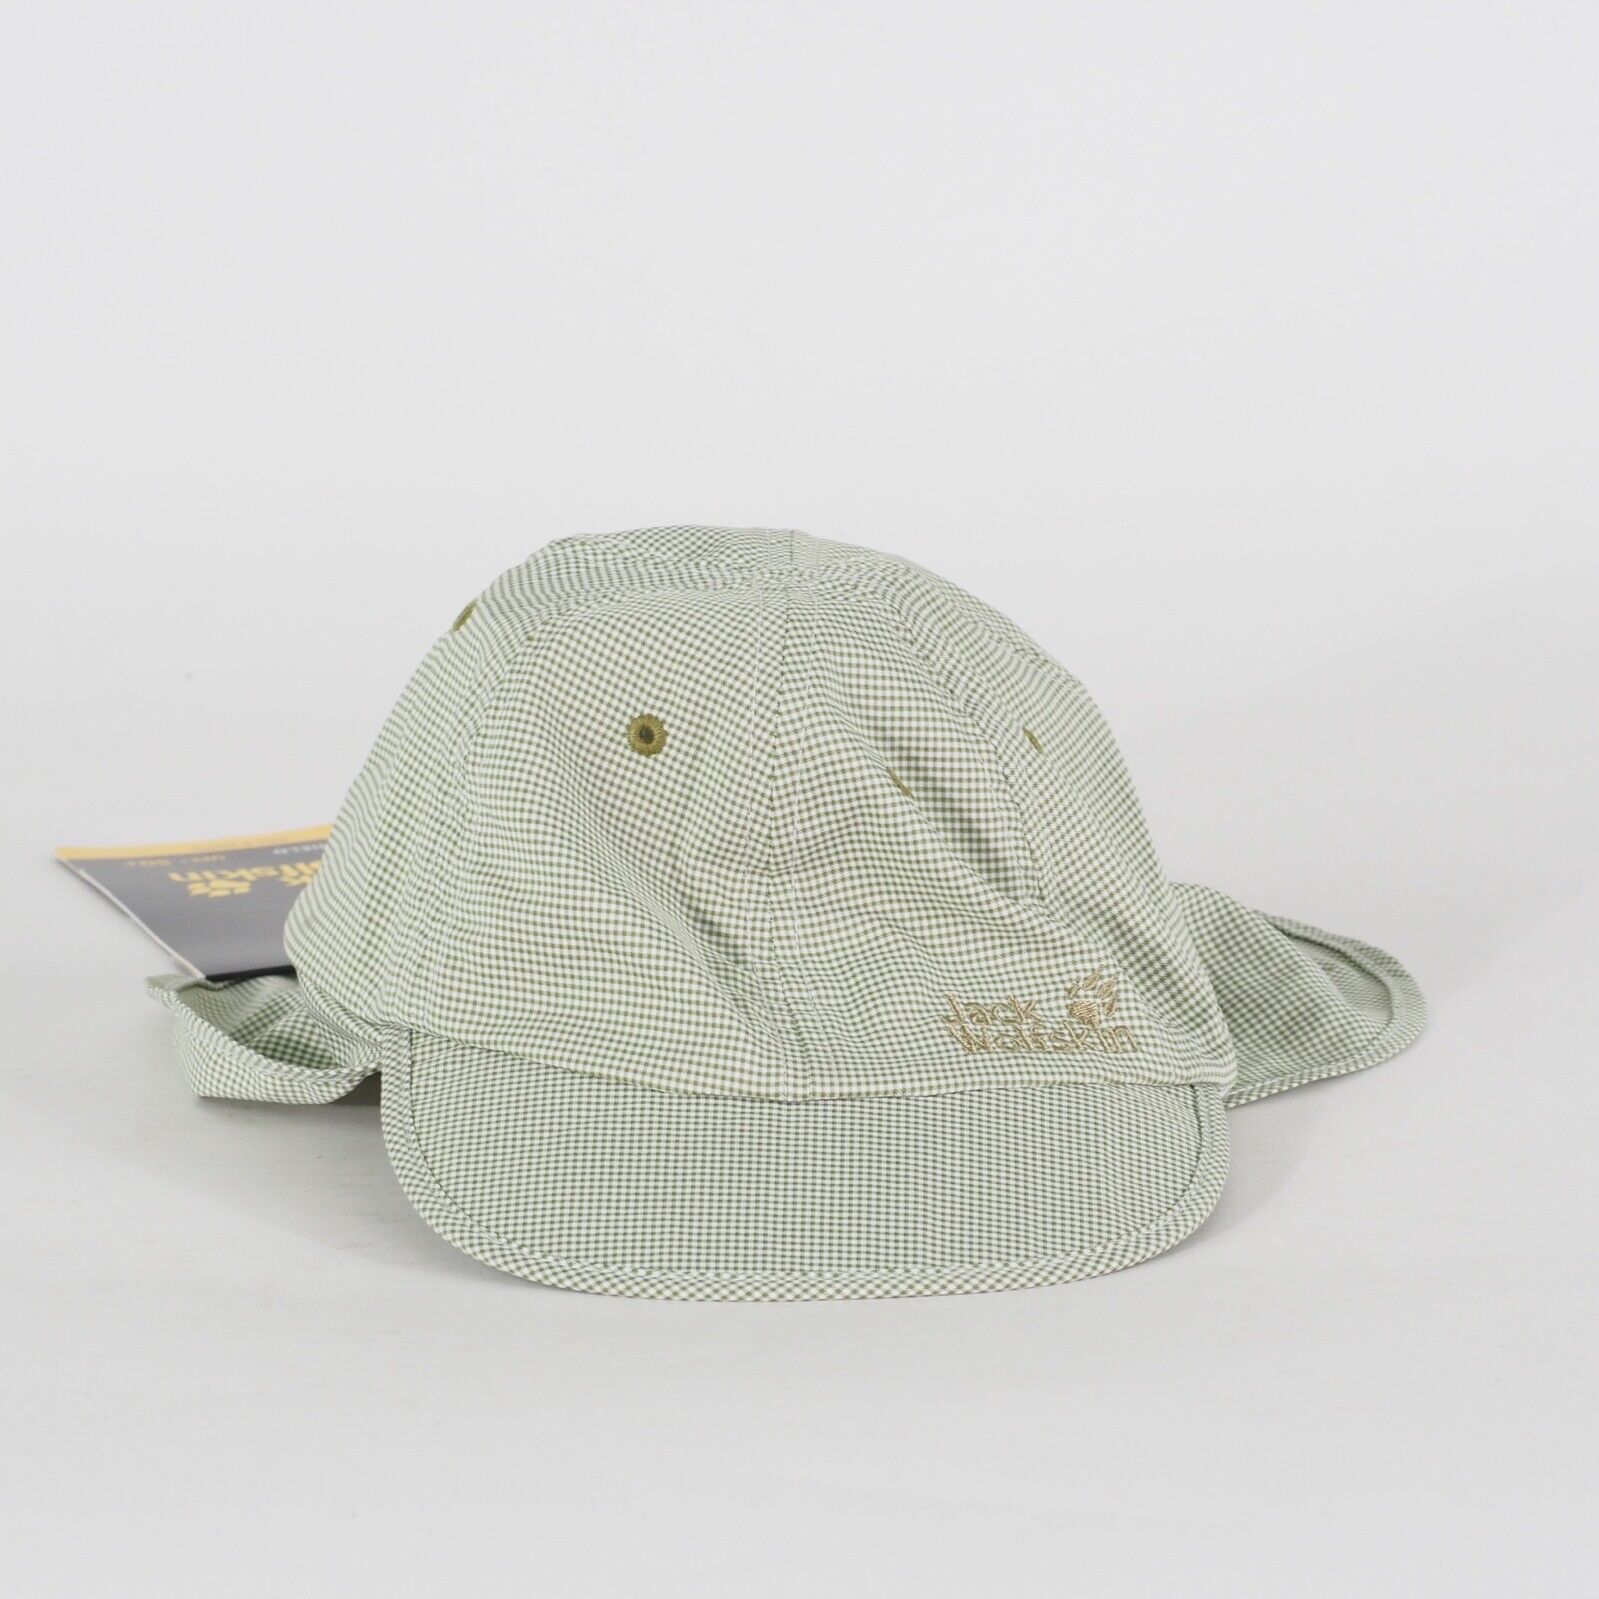 Kids Jack Wolfskin Desert Sun Hat 1904041 Lightweight Casual Outdoor Hat